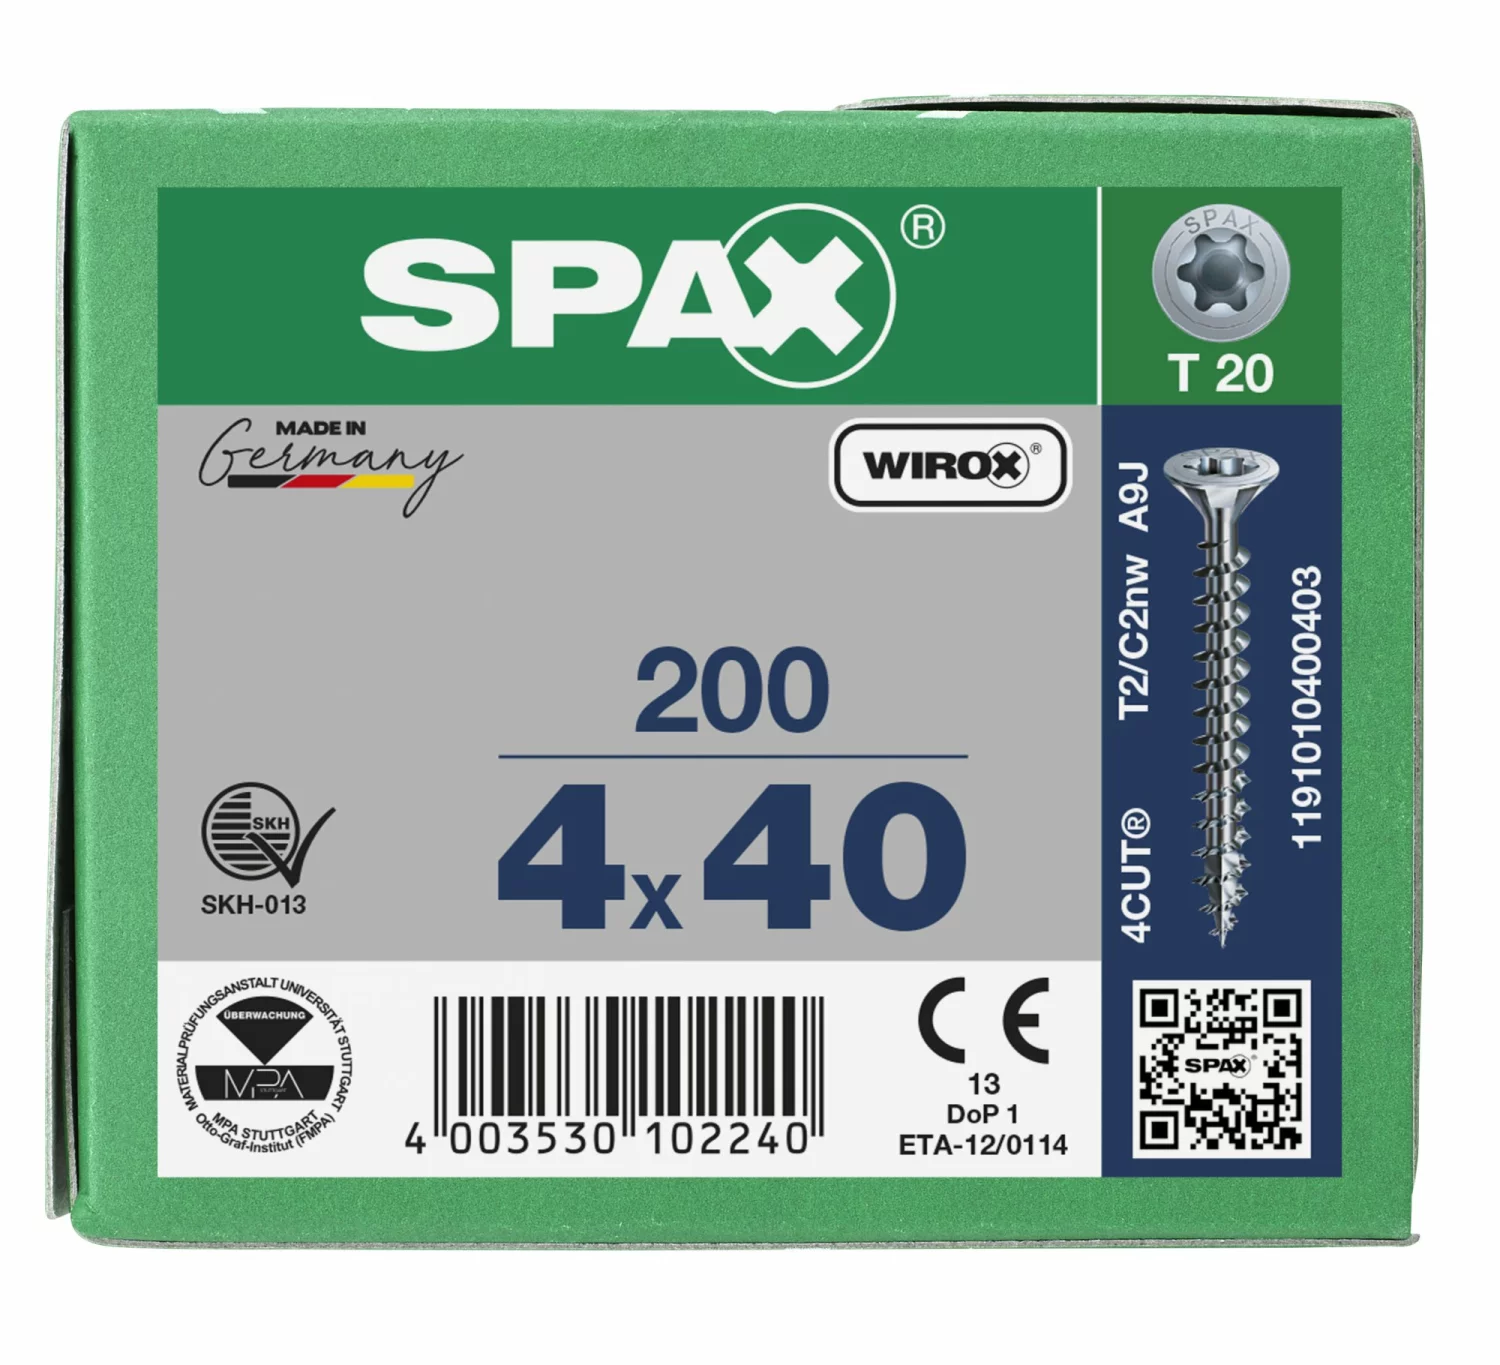 SPAX 1191010400403 Universele schroef, Verzonken kop, 4 x 40, Voldraad, T-STAR plus T20 - WIROX - 200 stuks